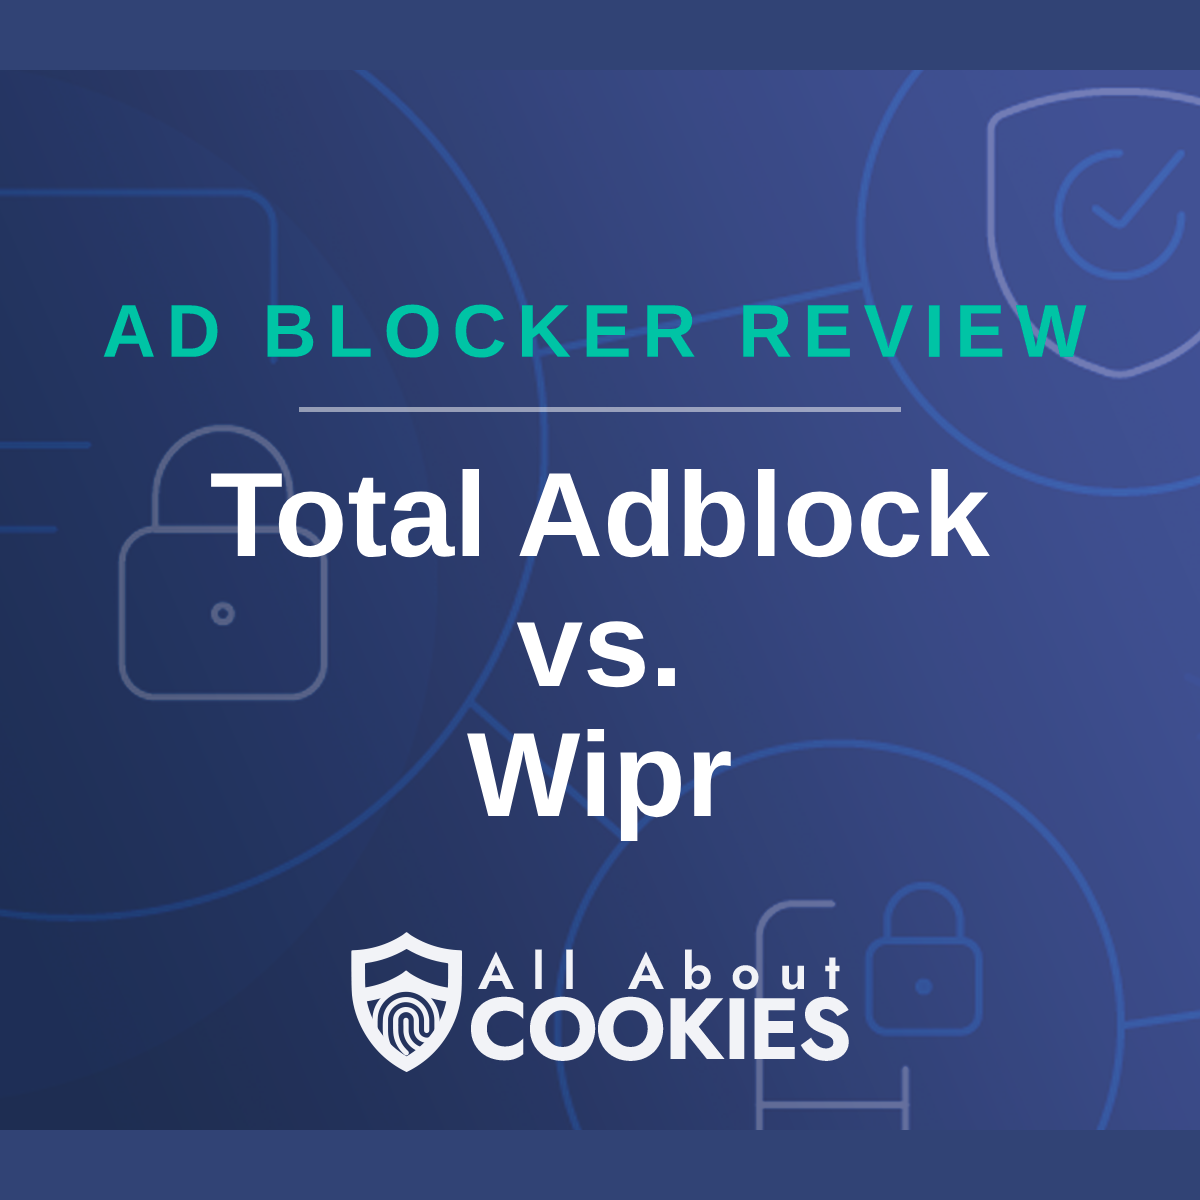 Total Adblock vs. Wipr